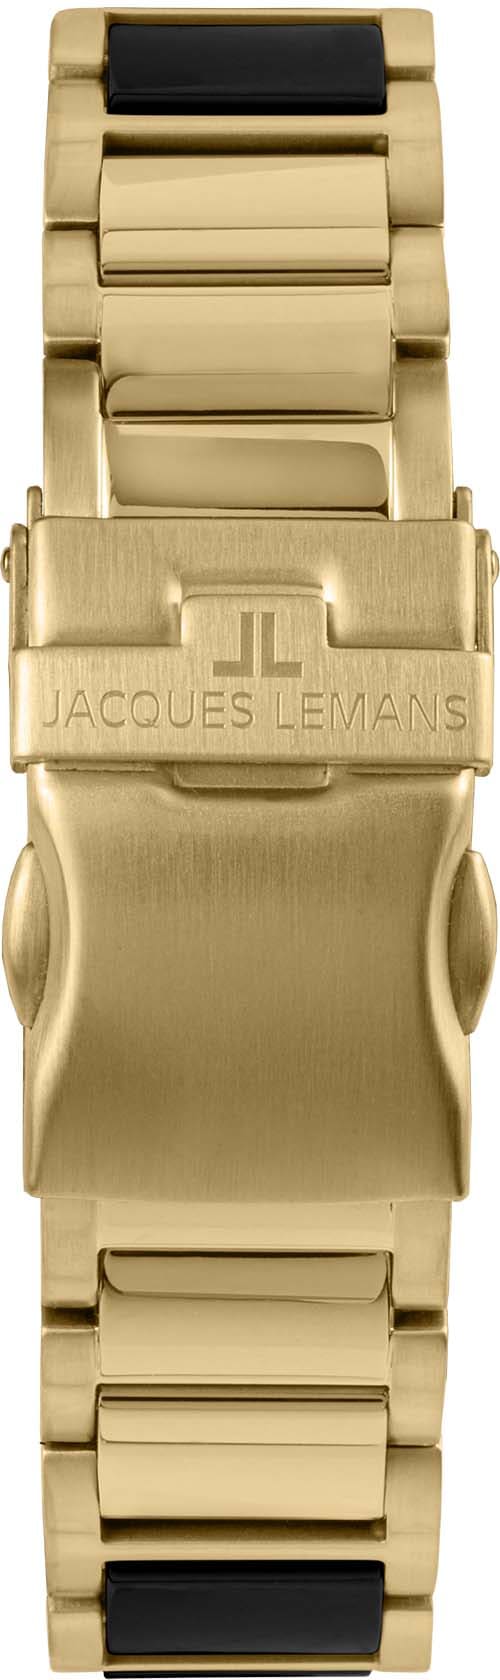 Jacques Lemans Keramikuhr »Liverpool, 42-10G«